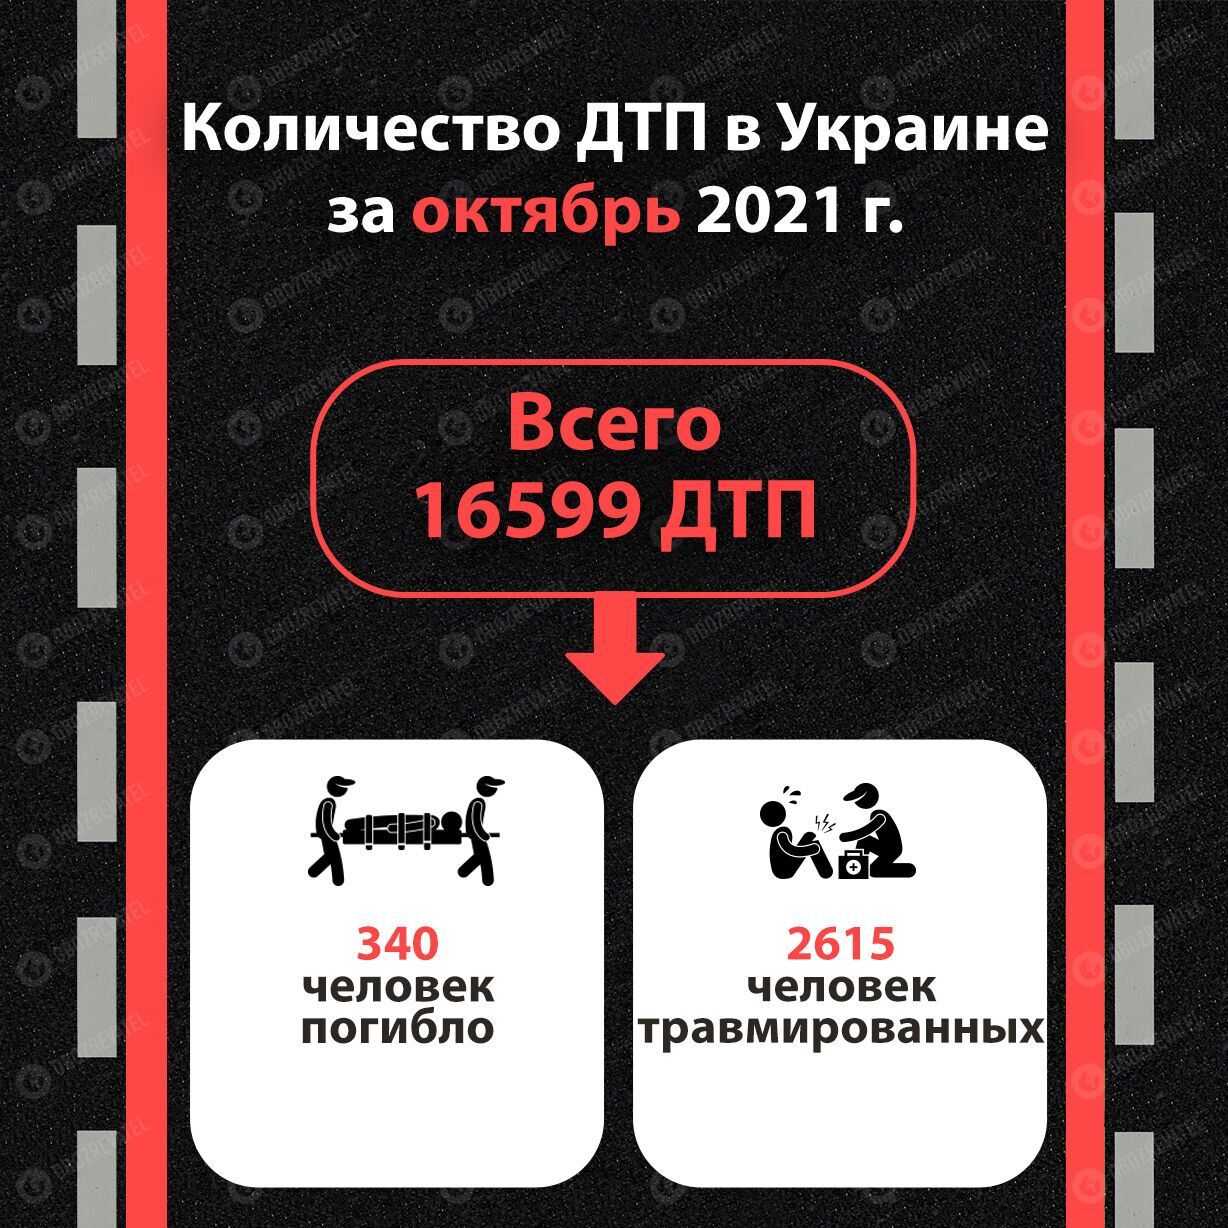 Количество ДТП в Украине за октябрь